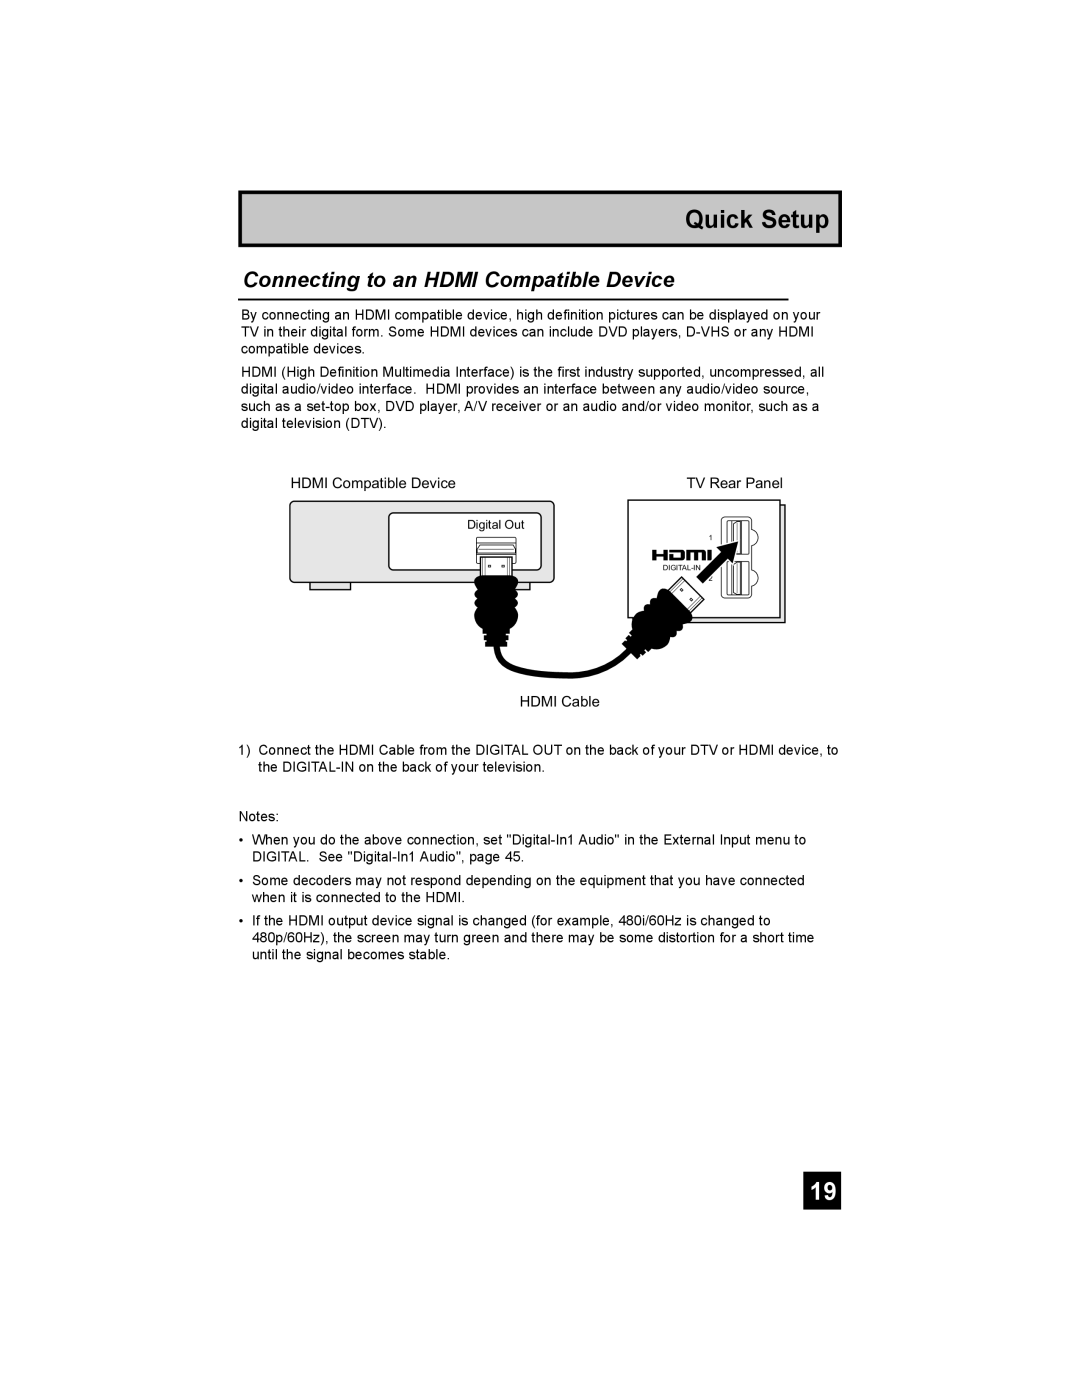 JVC AV 56P777, AV-48P787, AV-56P787, AV 48P777 manual Connecting to an HDMI Compatible Device, Quick Setup 